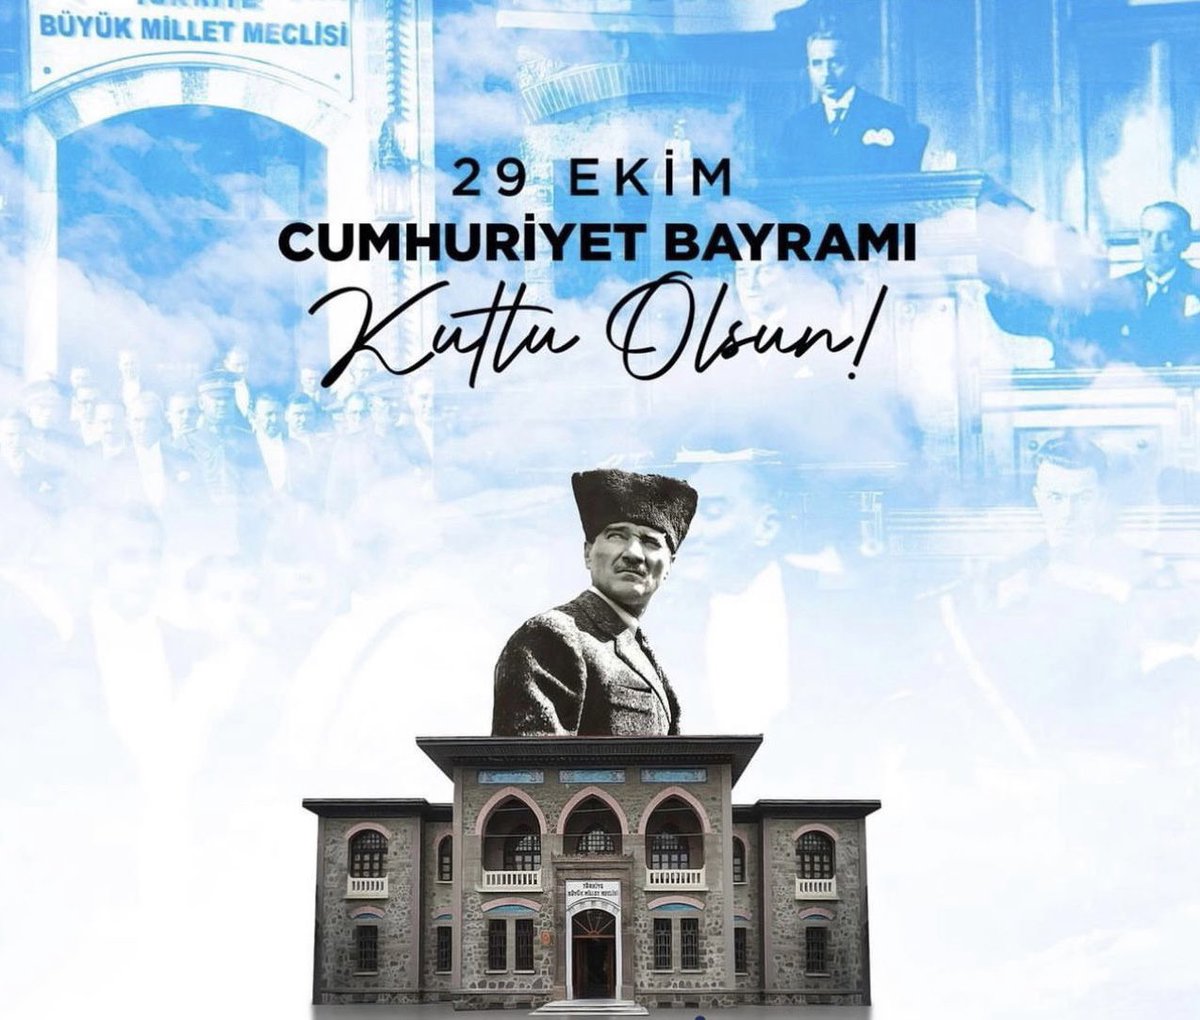 Cumhuriyet Bayramımızın 99.Yılı kutlu olsun. Türkiye Cumhuriyeti ilelebet payidar kalacaktır.